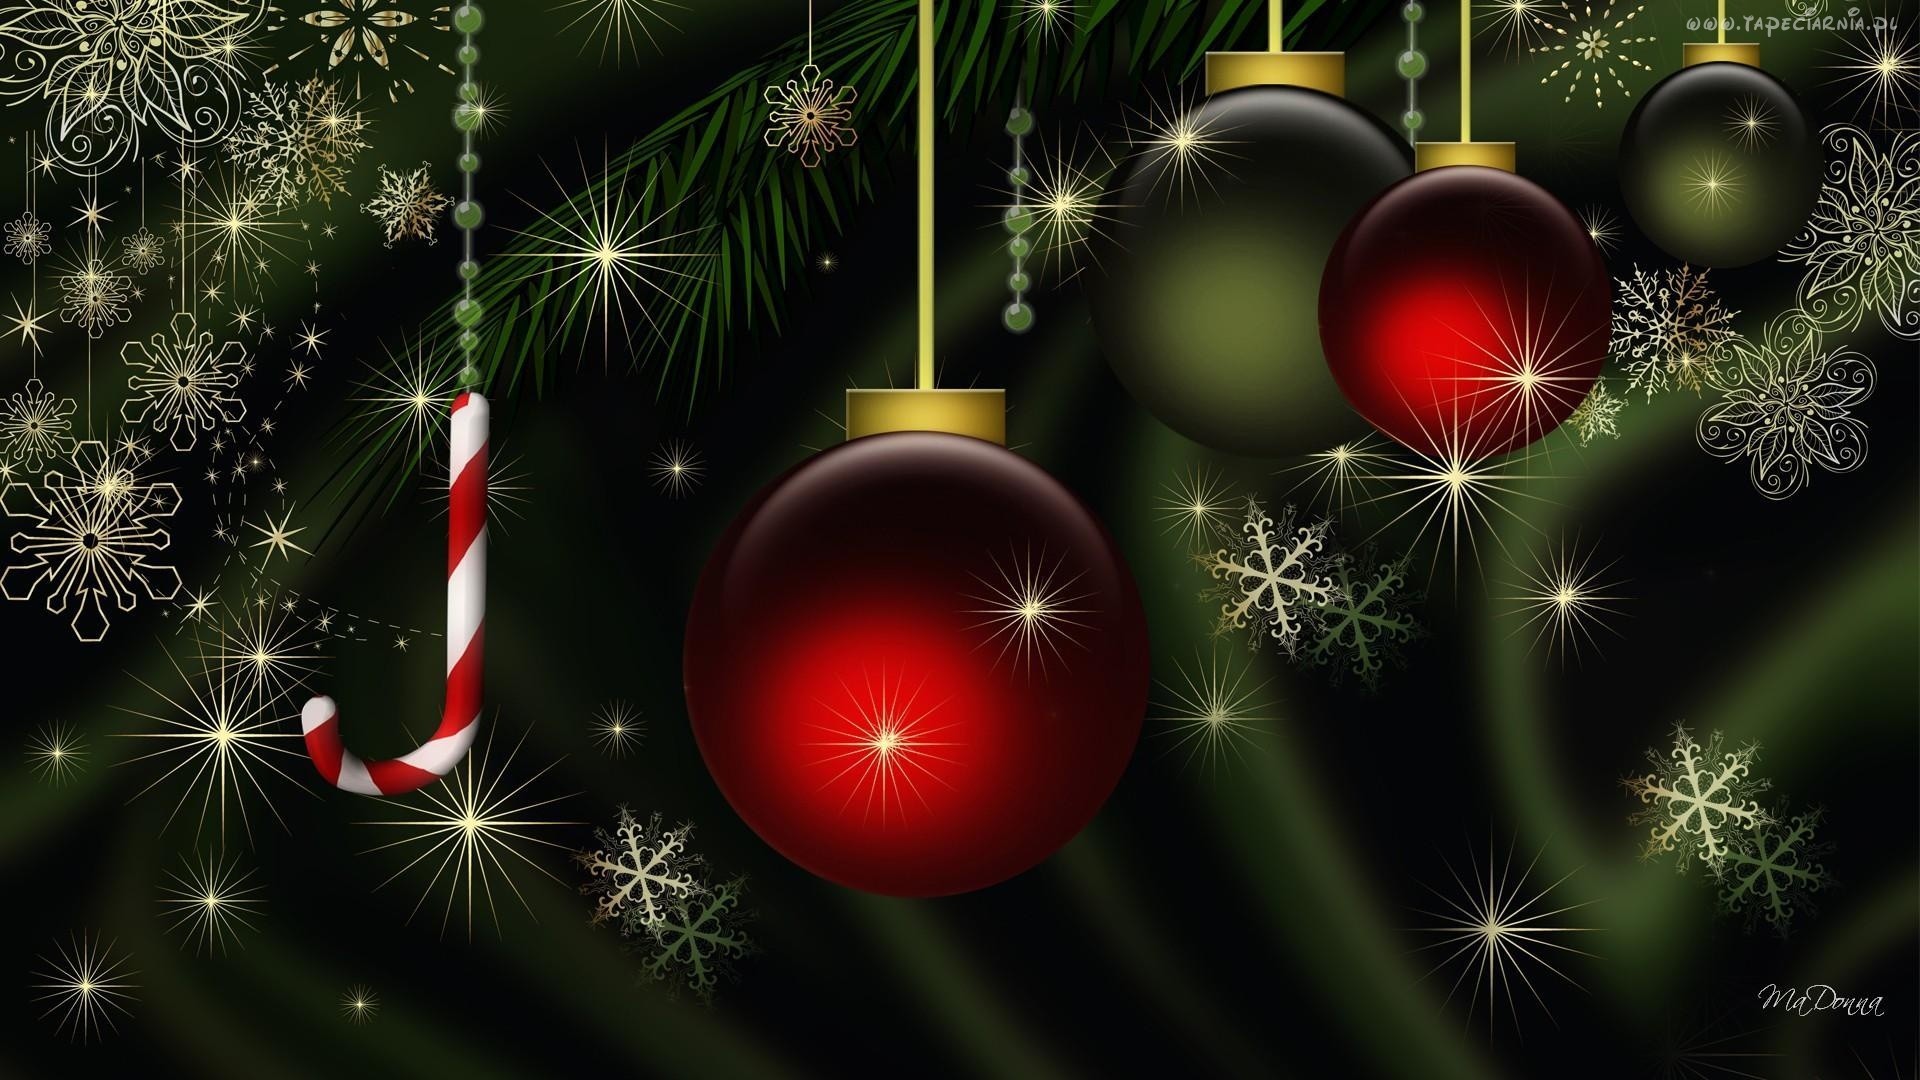 carta da parati nera di natale,ornamento di natale,decorazione natalizia,natale,albero di natale,albero